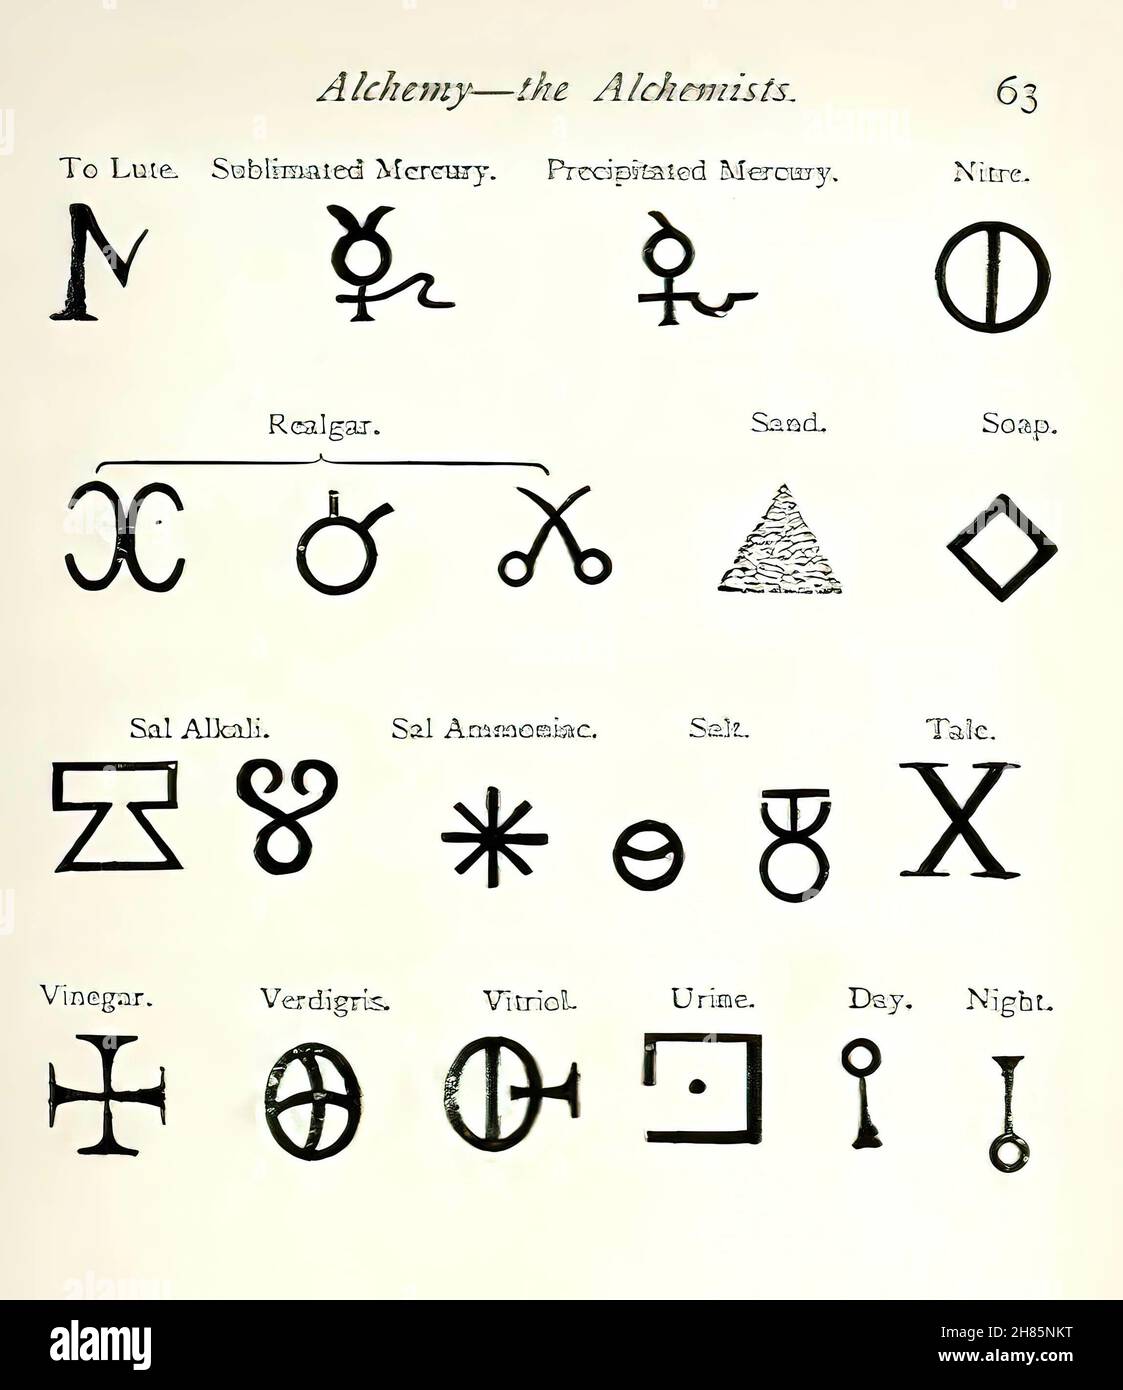 Алхимия силы. Таблица алхимических символов. Знак смерти в алхимии. Древние алхимические символы. Символ железа в алхимии.